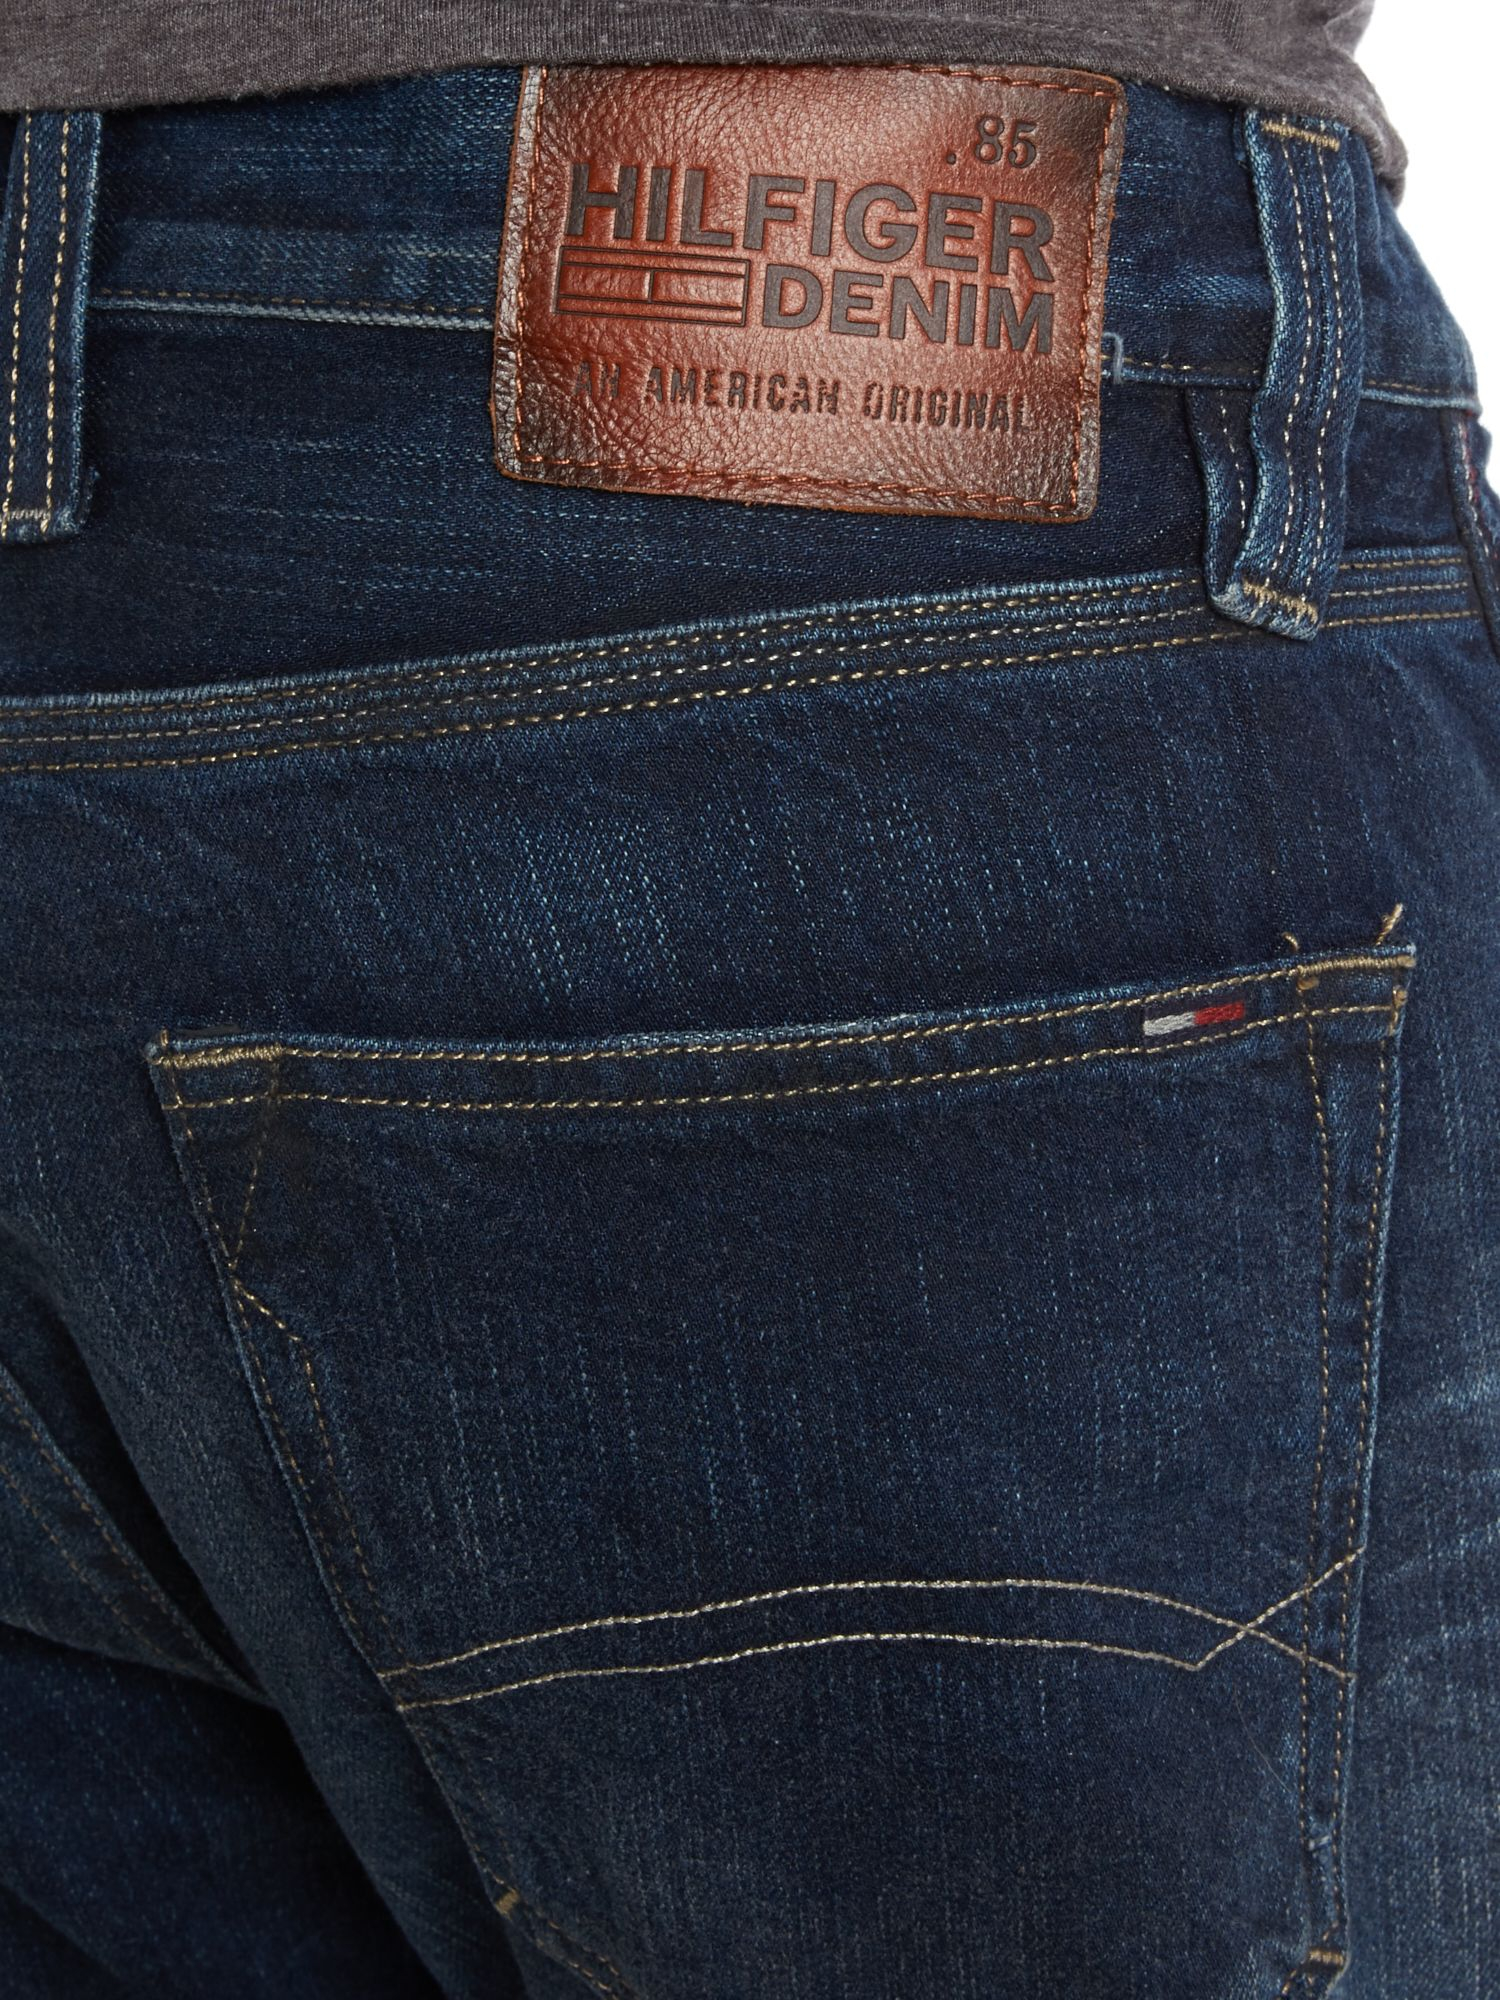 سبعة نيوزيلاندا زرافة مجموع الاختبار حجر tommy hilfiger ronan jeans -  mastercraftcontractorstx.com